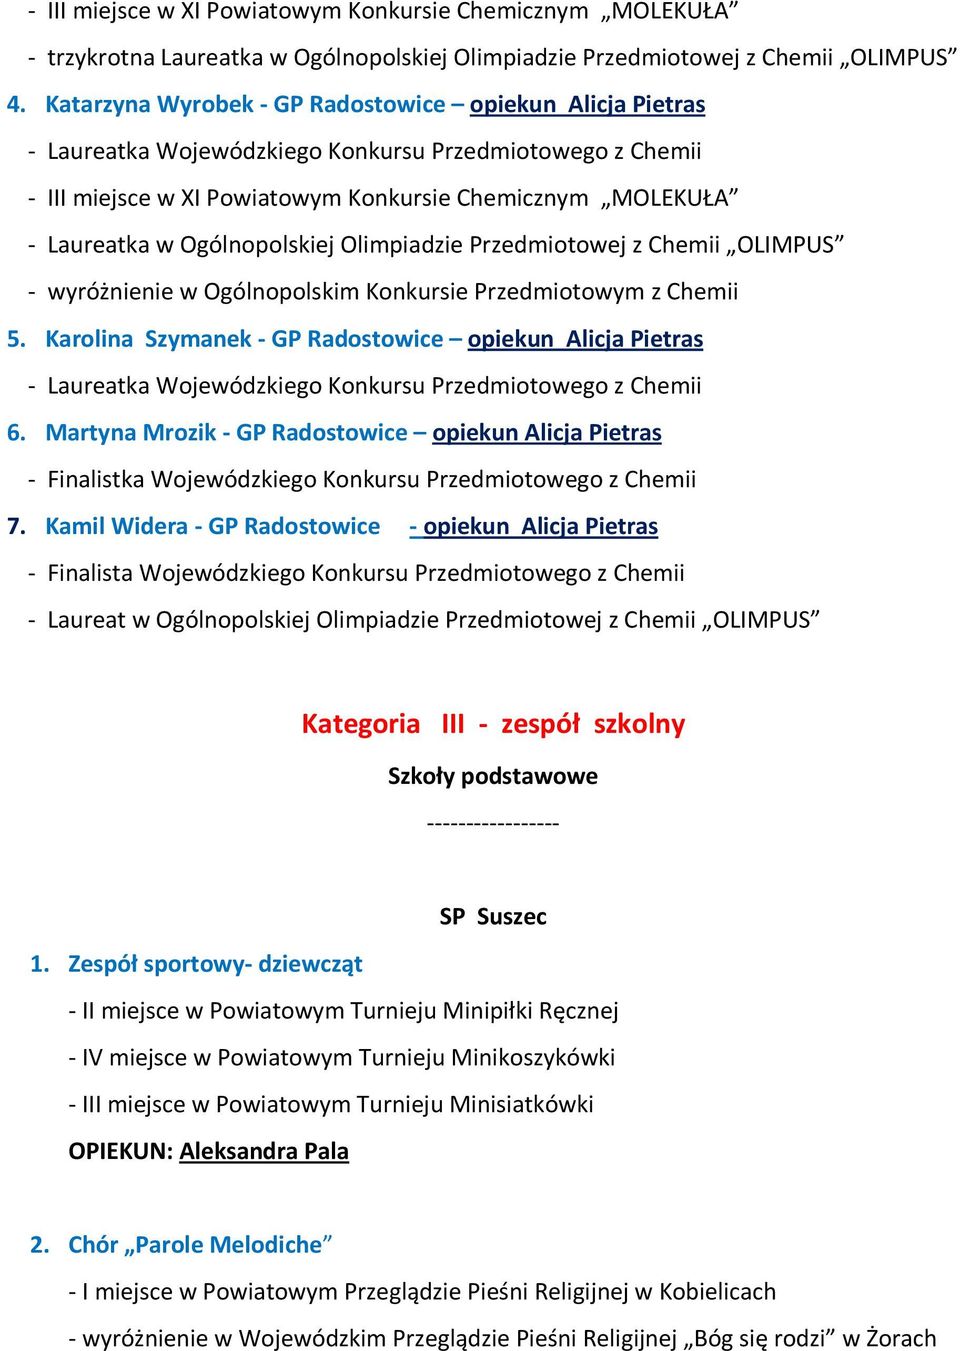 Ogólnopolskiej Olimpiadzie Przedmiotowej z Chemii OLIMPUS - wyróżnienie w Ogólnopolskim Konkursie Przedmiotowym z Chemii 5.